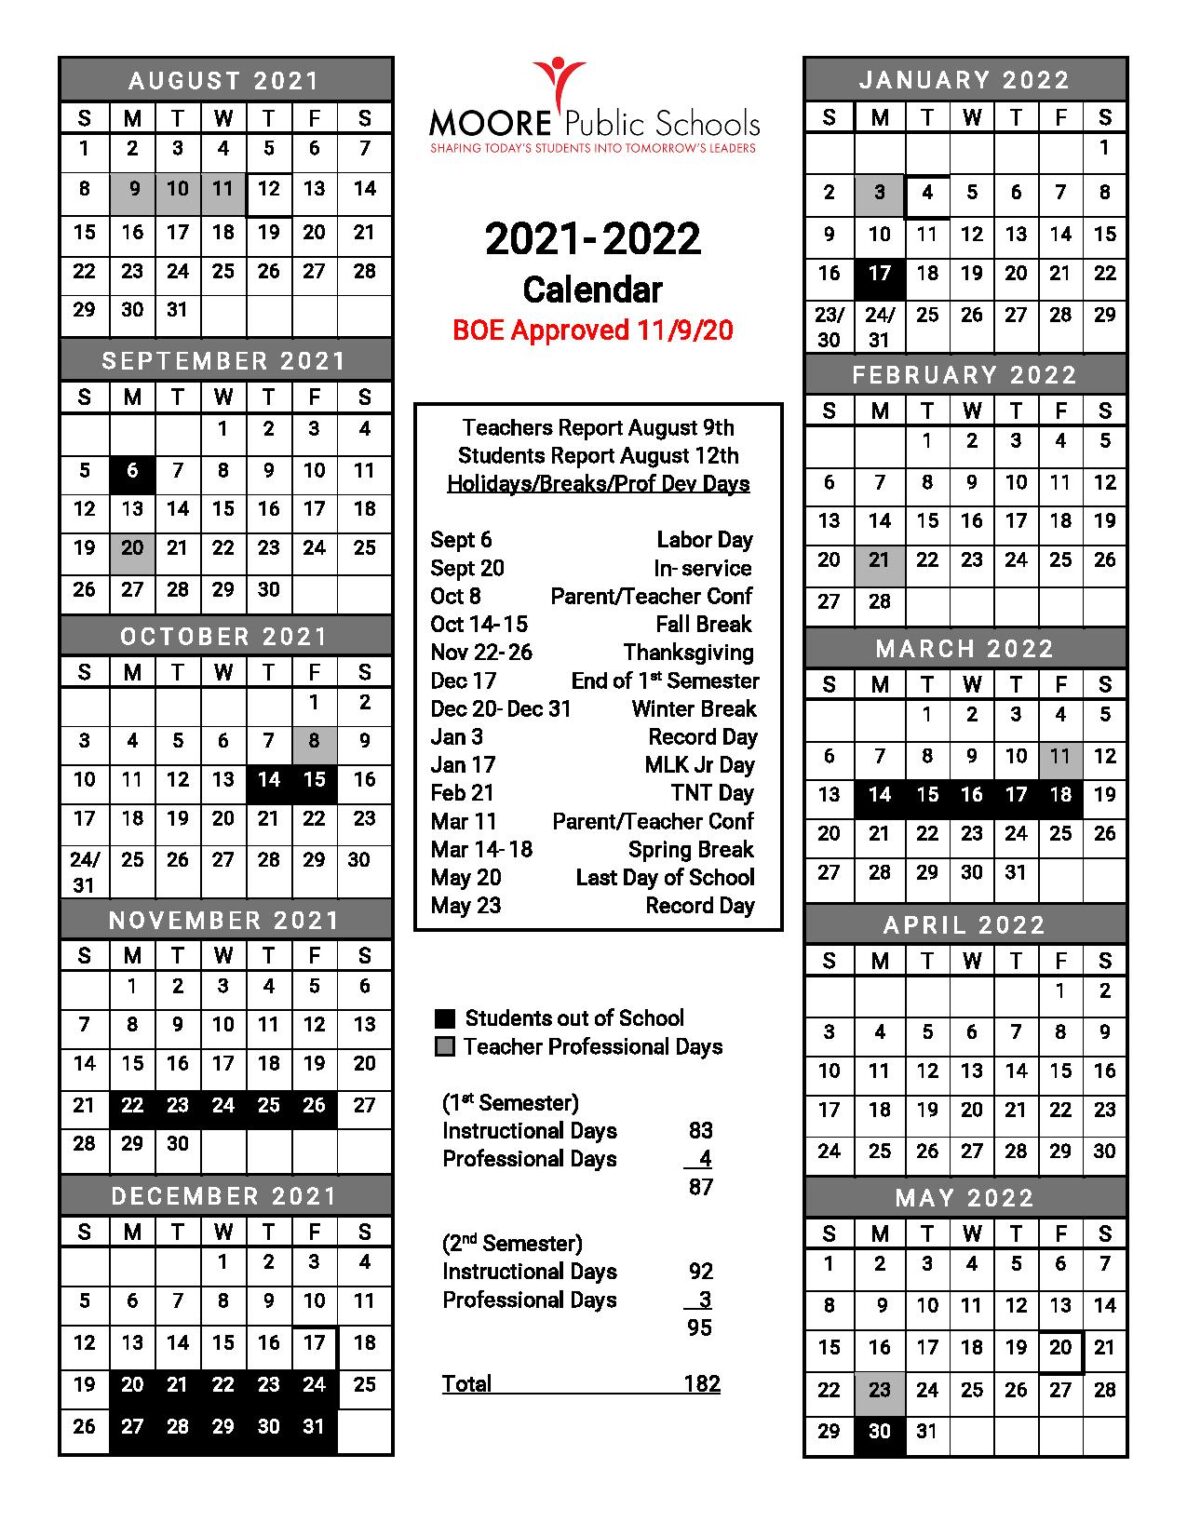 Moore Public Schools Calendar 2021-2022 in PDF